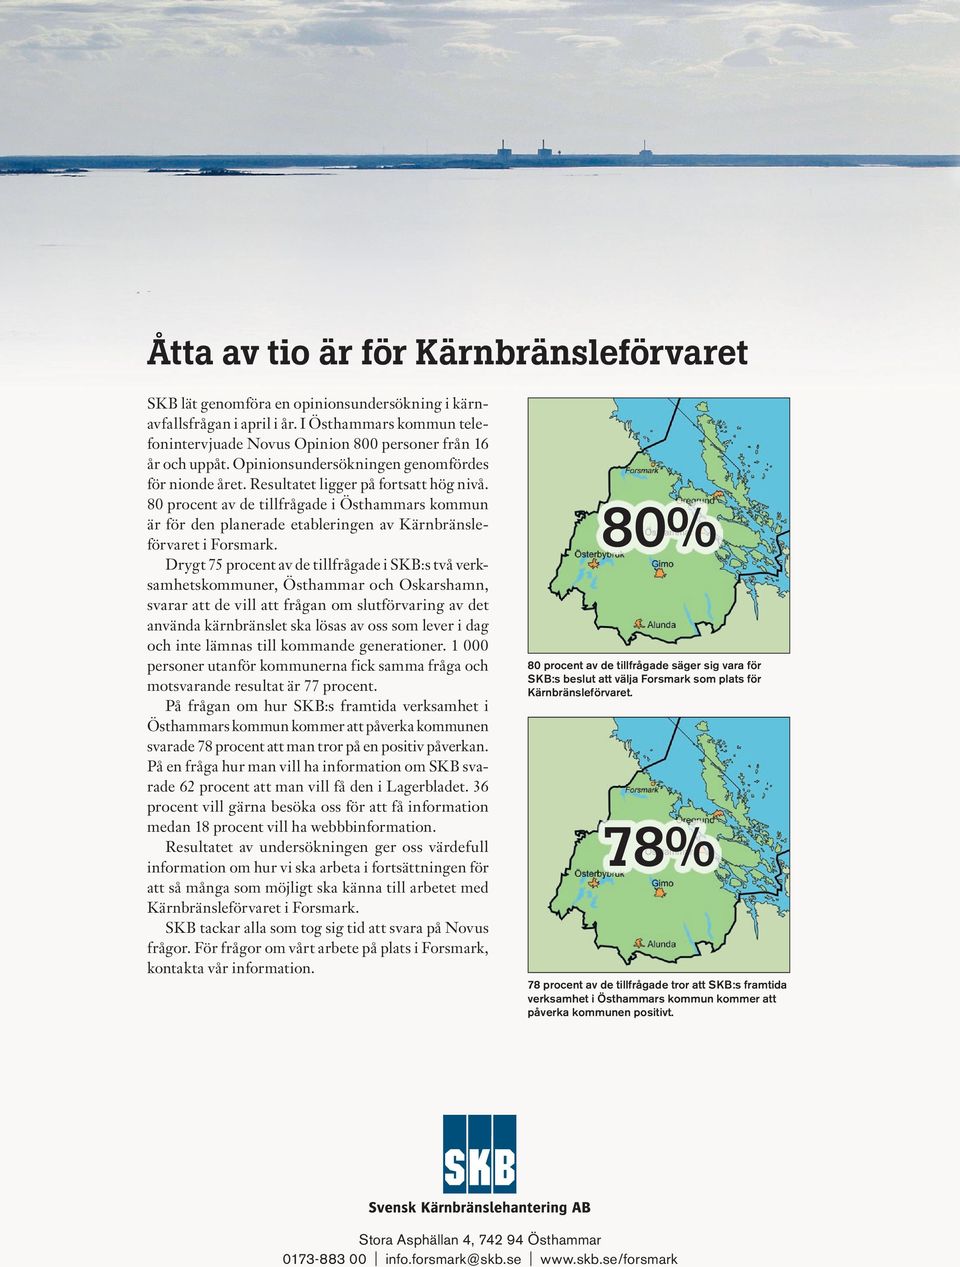 80 procent av de tillfrågade i Östhammars kommun är för den planerade etableringen av Kärnbränsleförvaret i Forsmark.